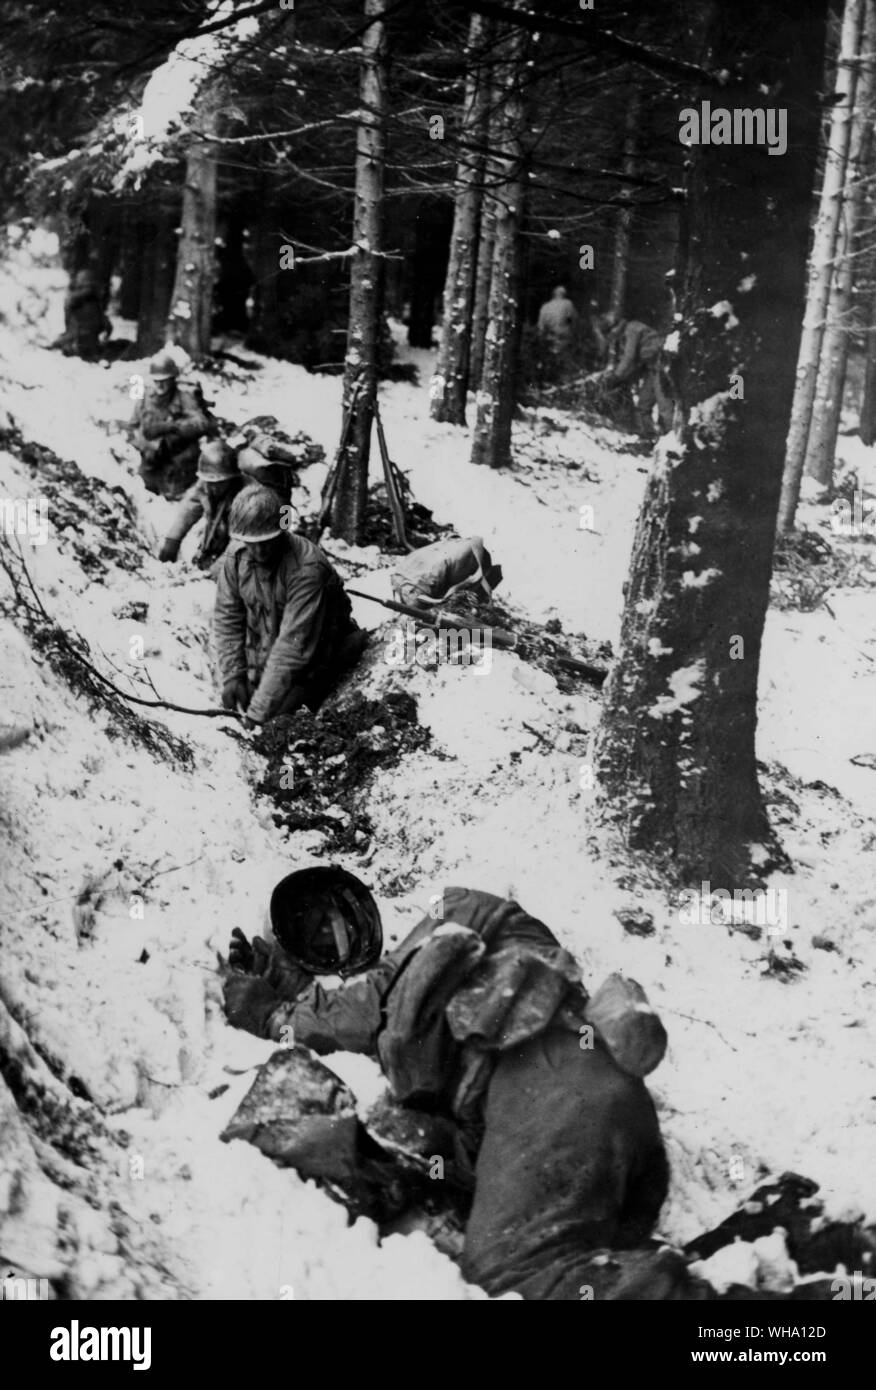 WW2 : des soldats américains de creuser des trous à la hâte dans la neige comme terrain d'artillerie ennemie s'ouvre près de Brugge, Belgique. Soldat gisant en premier plan a été frappé vers le bas. 31/12/1944 Ardennes, campagne. Banque D'Images